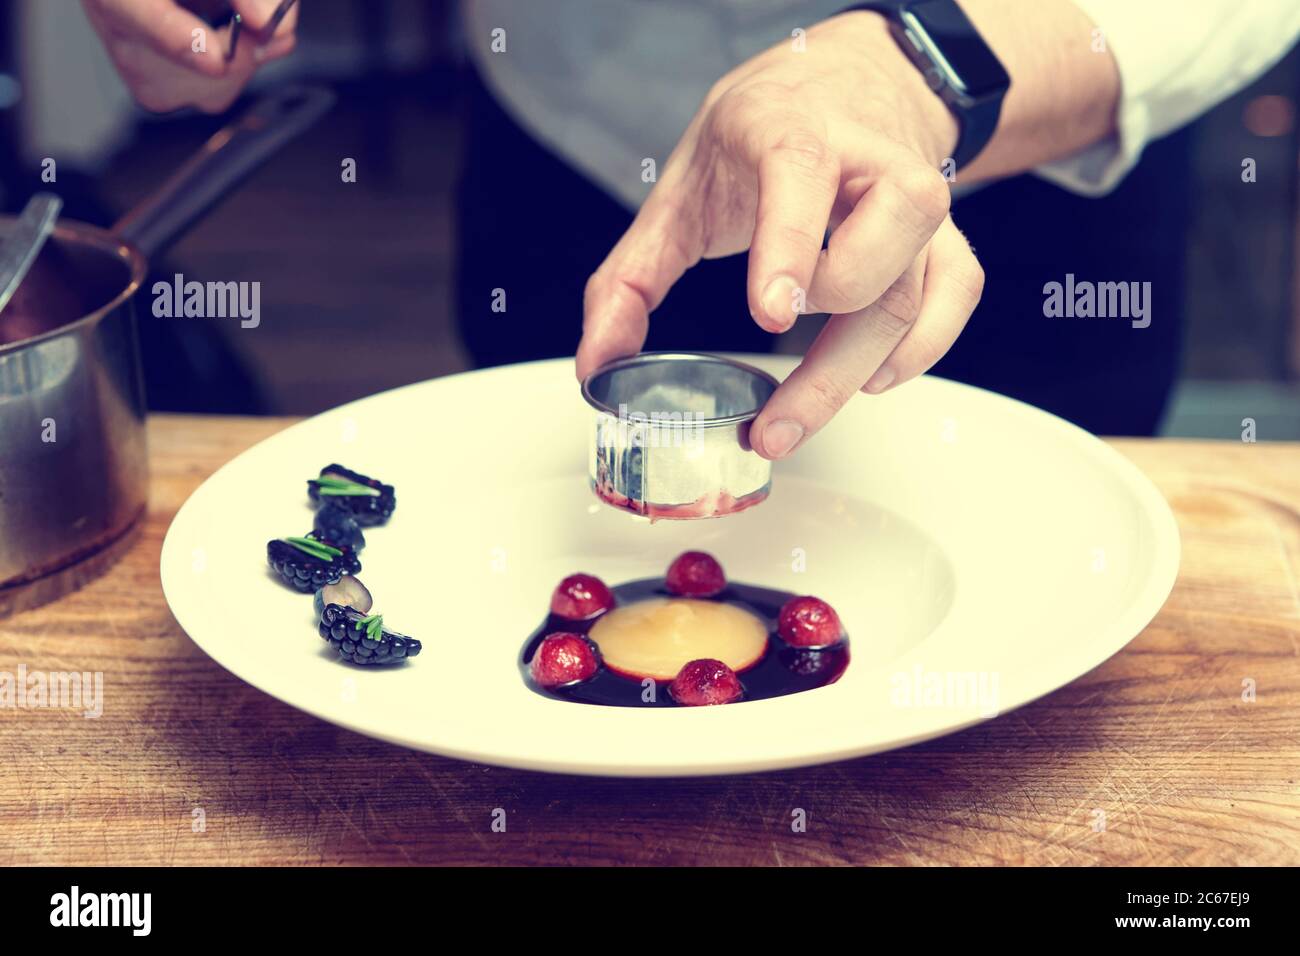 Lo chef professionista sta cucinando piatti gourmet utilizzando un anello culinario in metallo, tonato Foto Stock